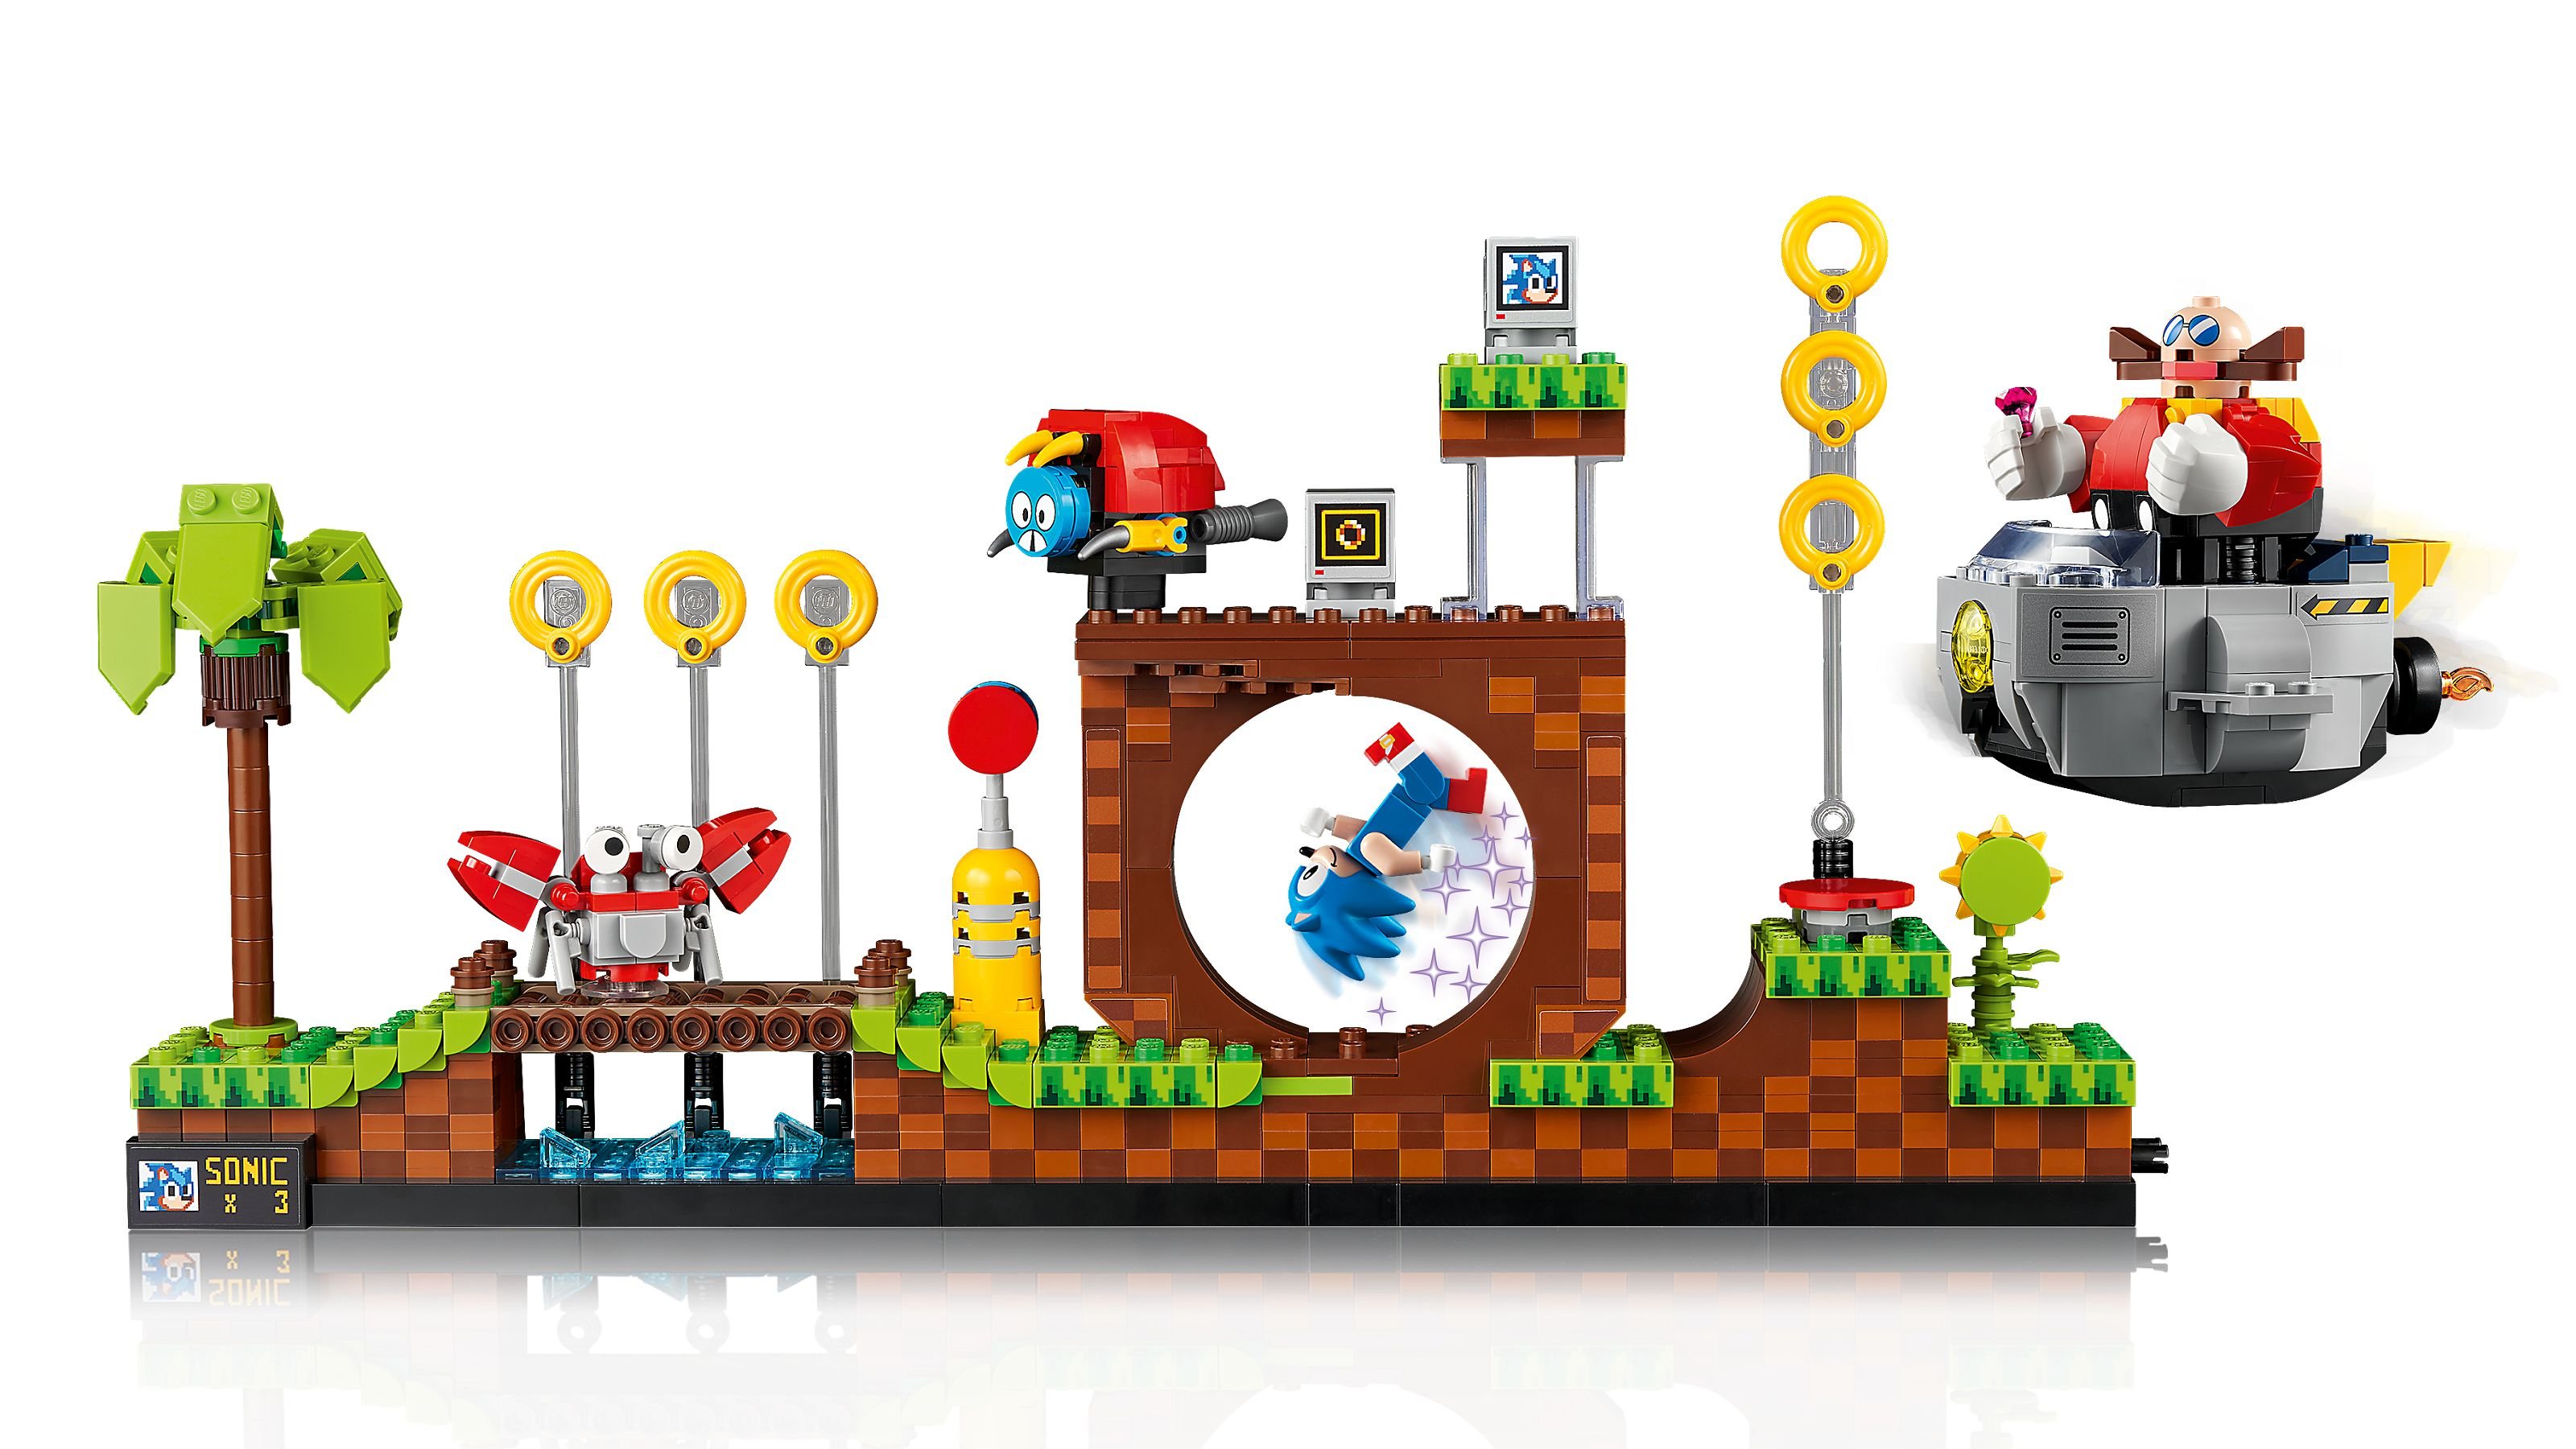 LEGO Ideas 21331 Sonic the Hedgehog™ – Green Hill Zone LEGO_21331_alt2.jpg